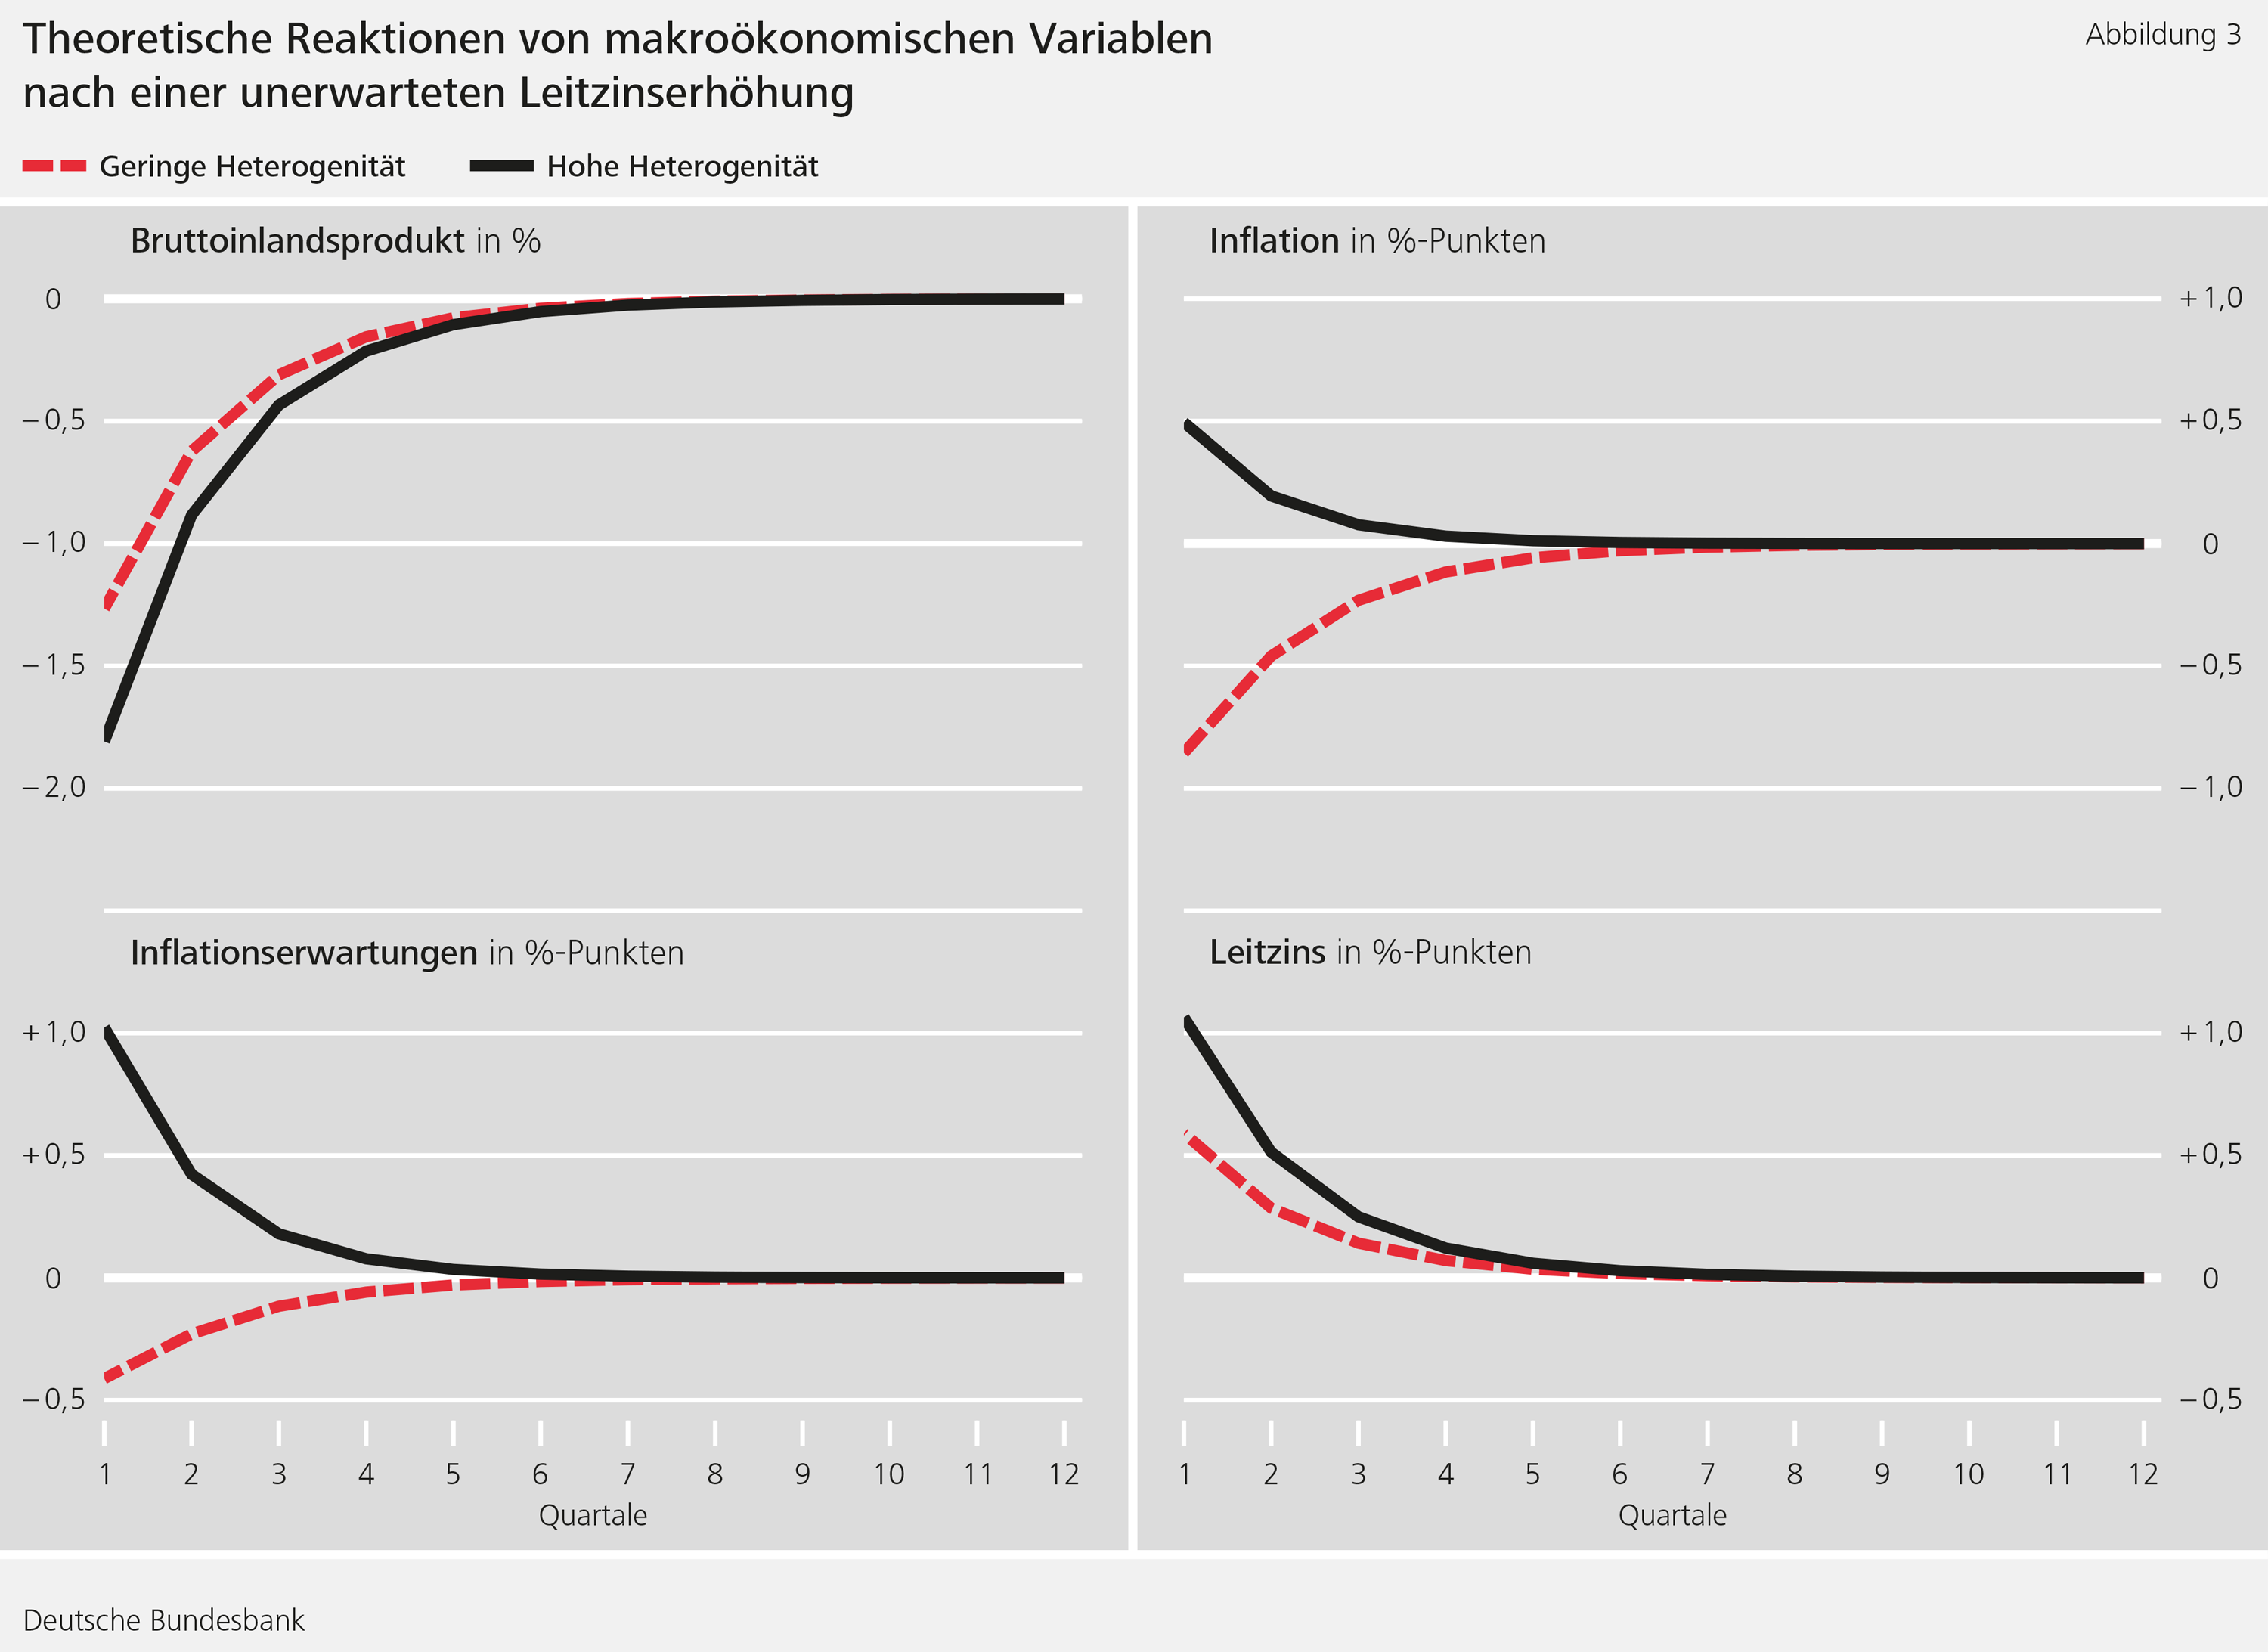 Abbildung 3: Theoretische Reaktionen von makroökonomischen Variablen nach einer unerwarteten Leitzinserhöhung